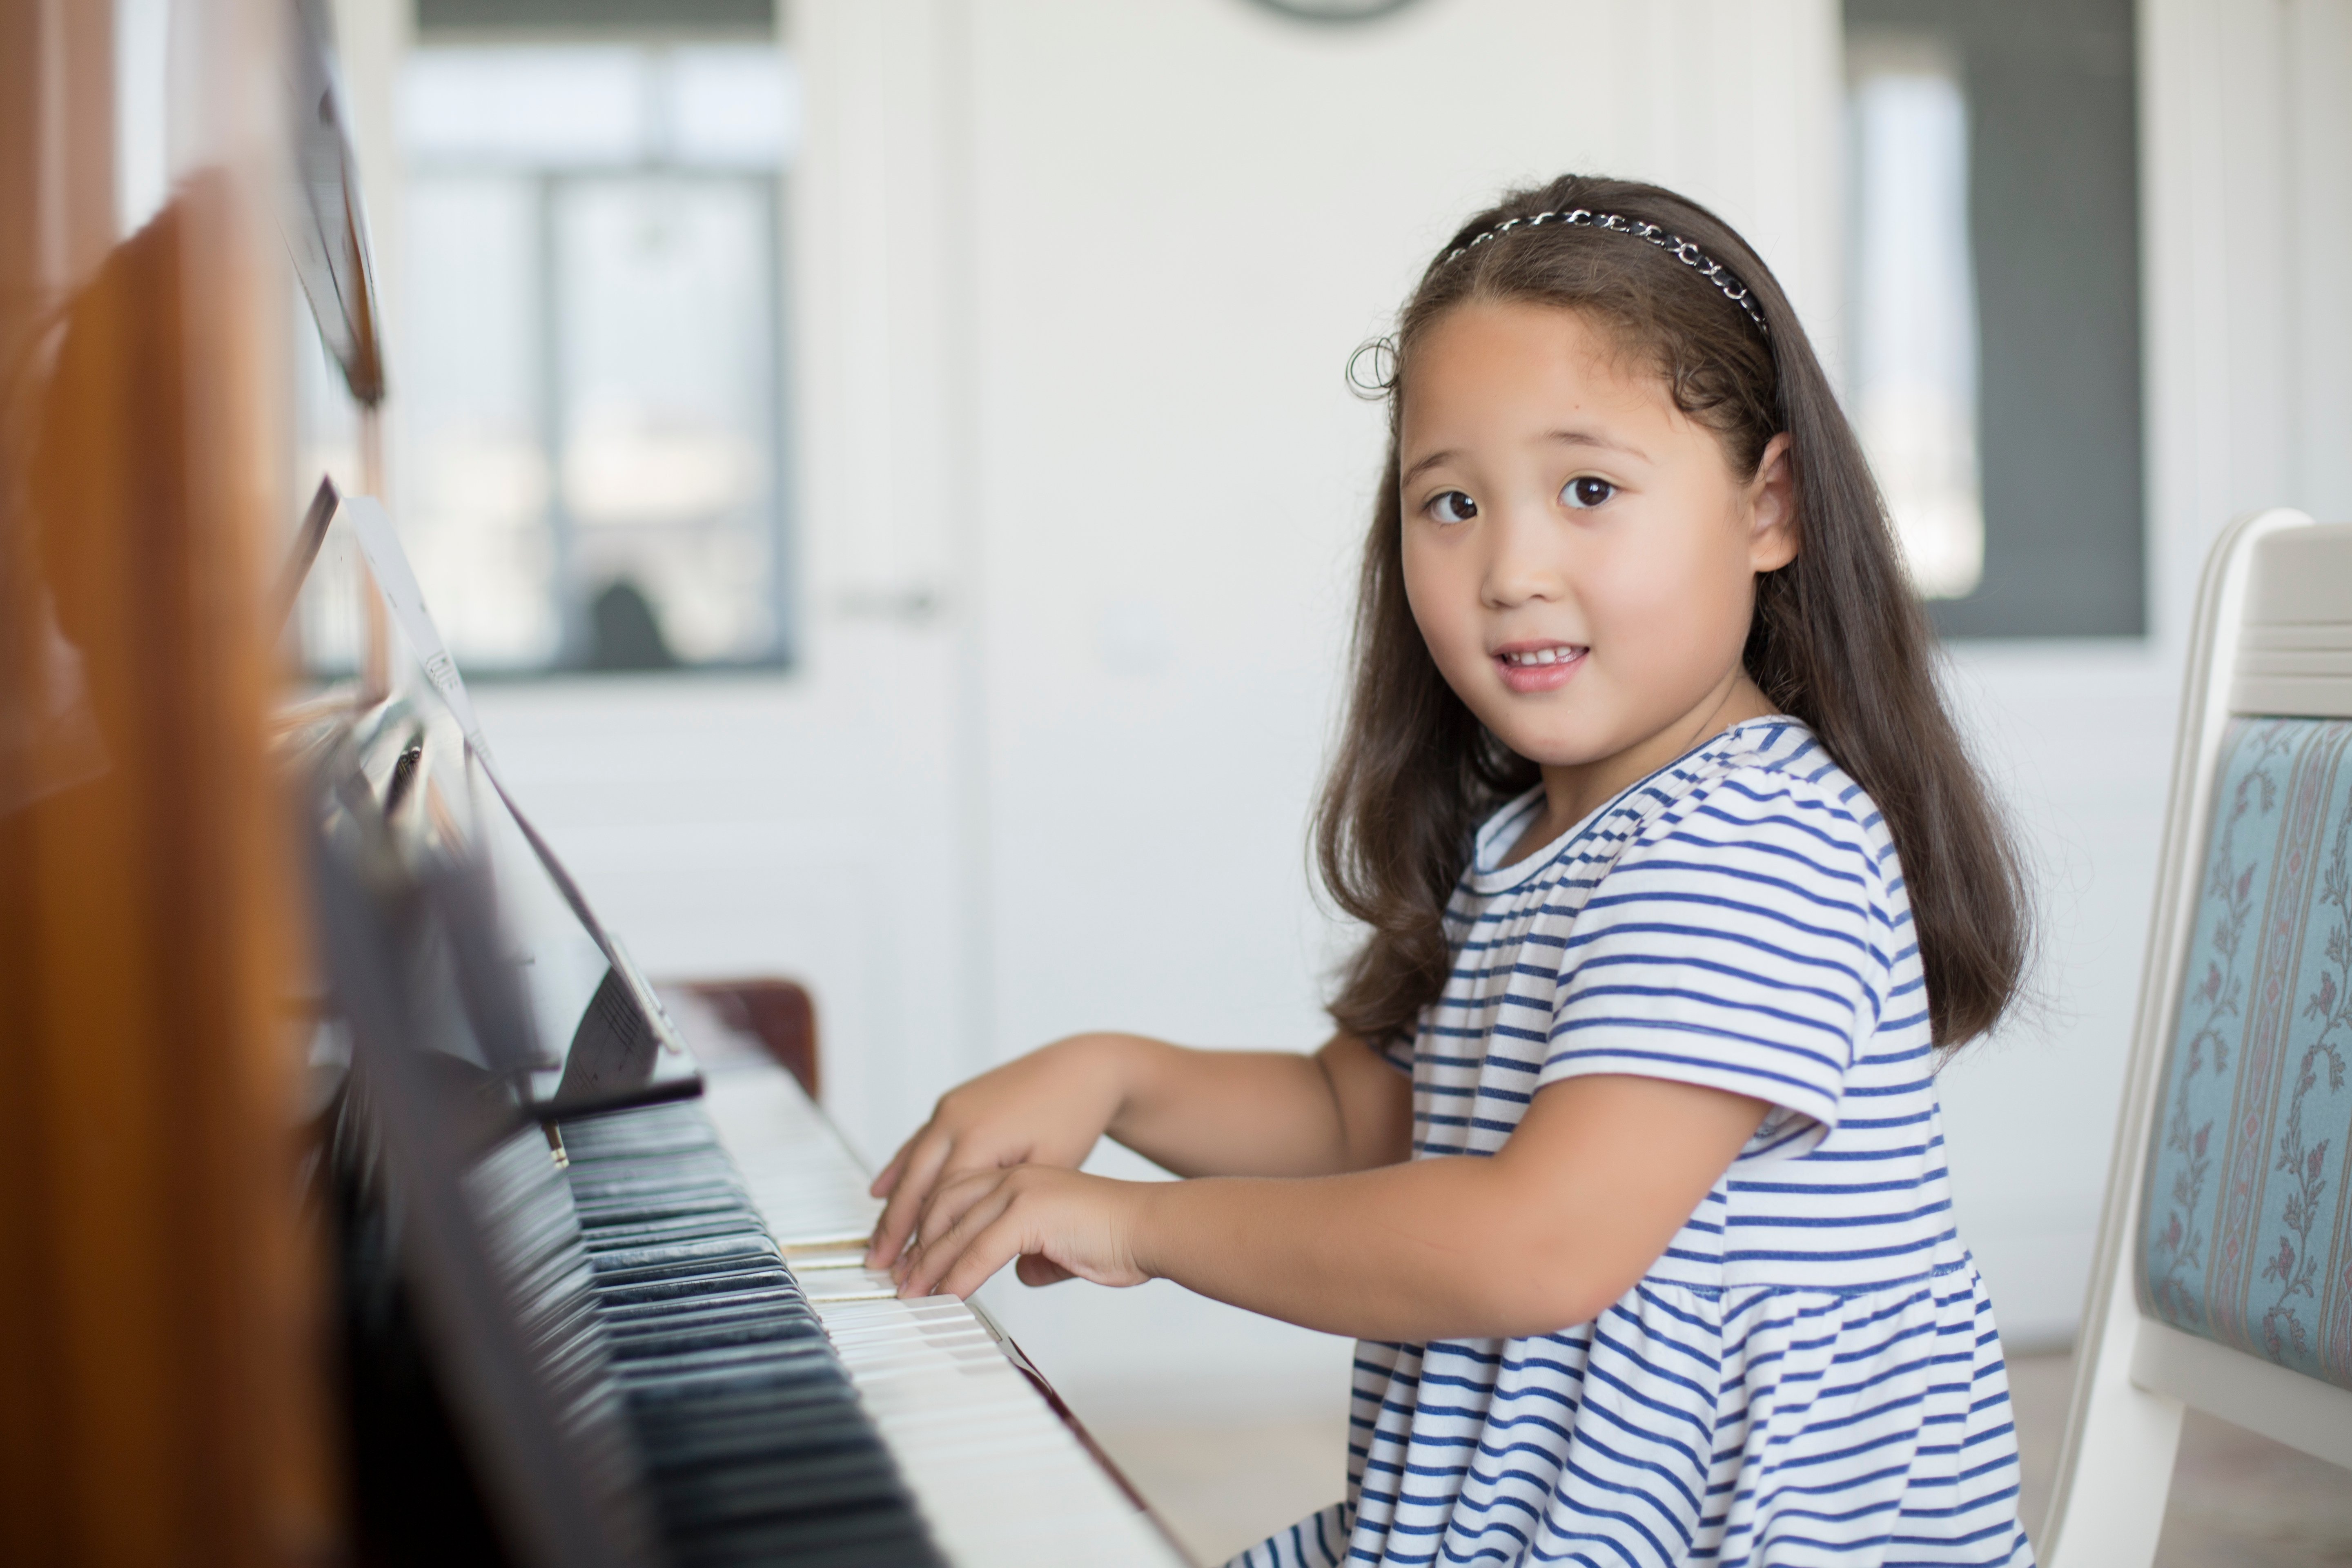 Tout Savoir sur L'Apprentissage du Piano pour Enfant